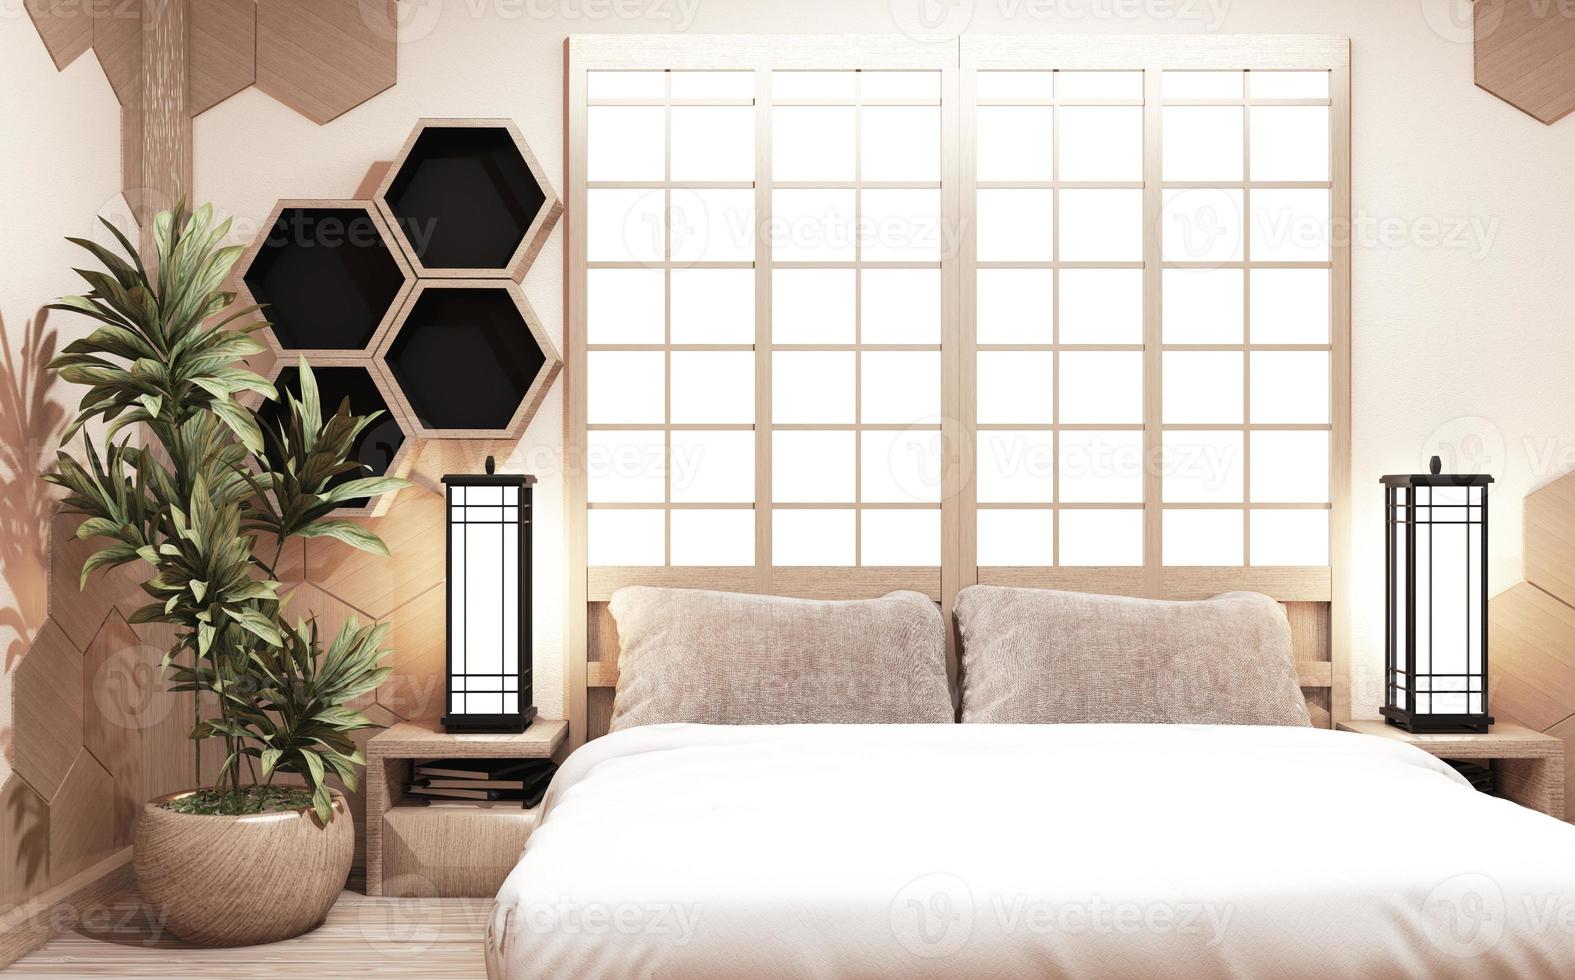 zeshoekige plank houten stijl op muur slaapkamer japanse stijl met planten en lamp decoratie op houten vloer.3d rednering foto